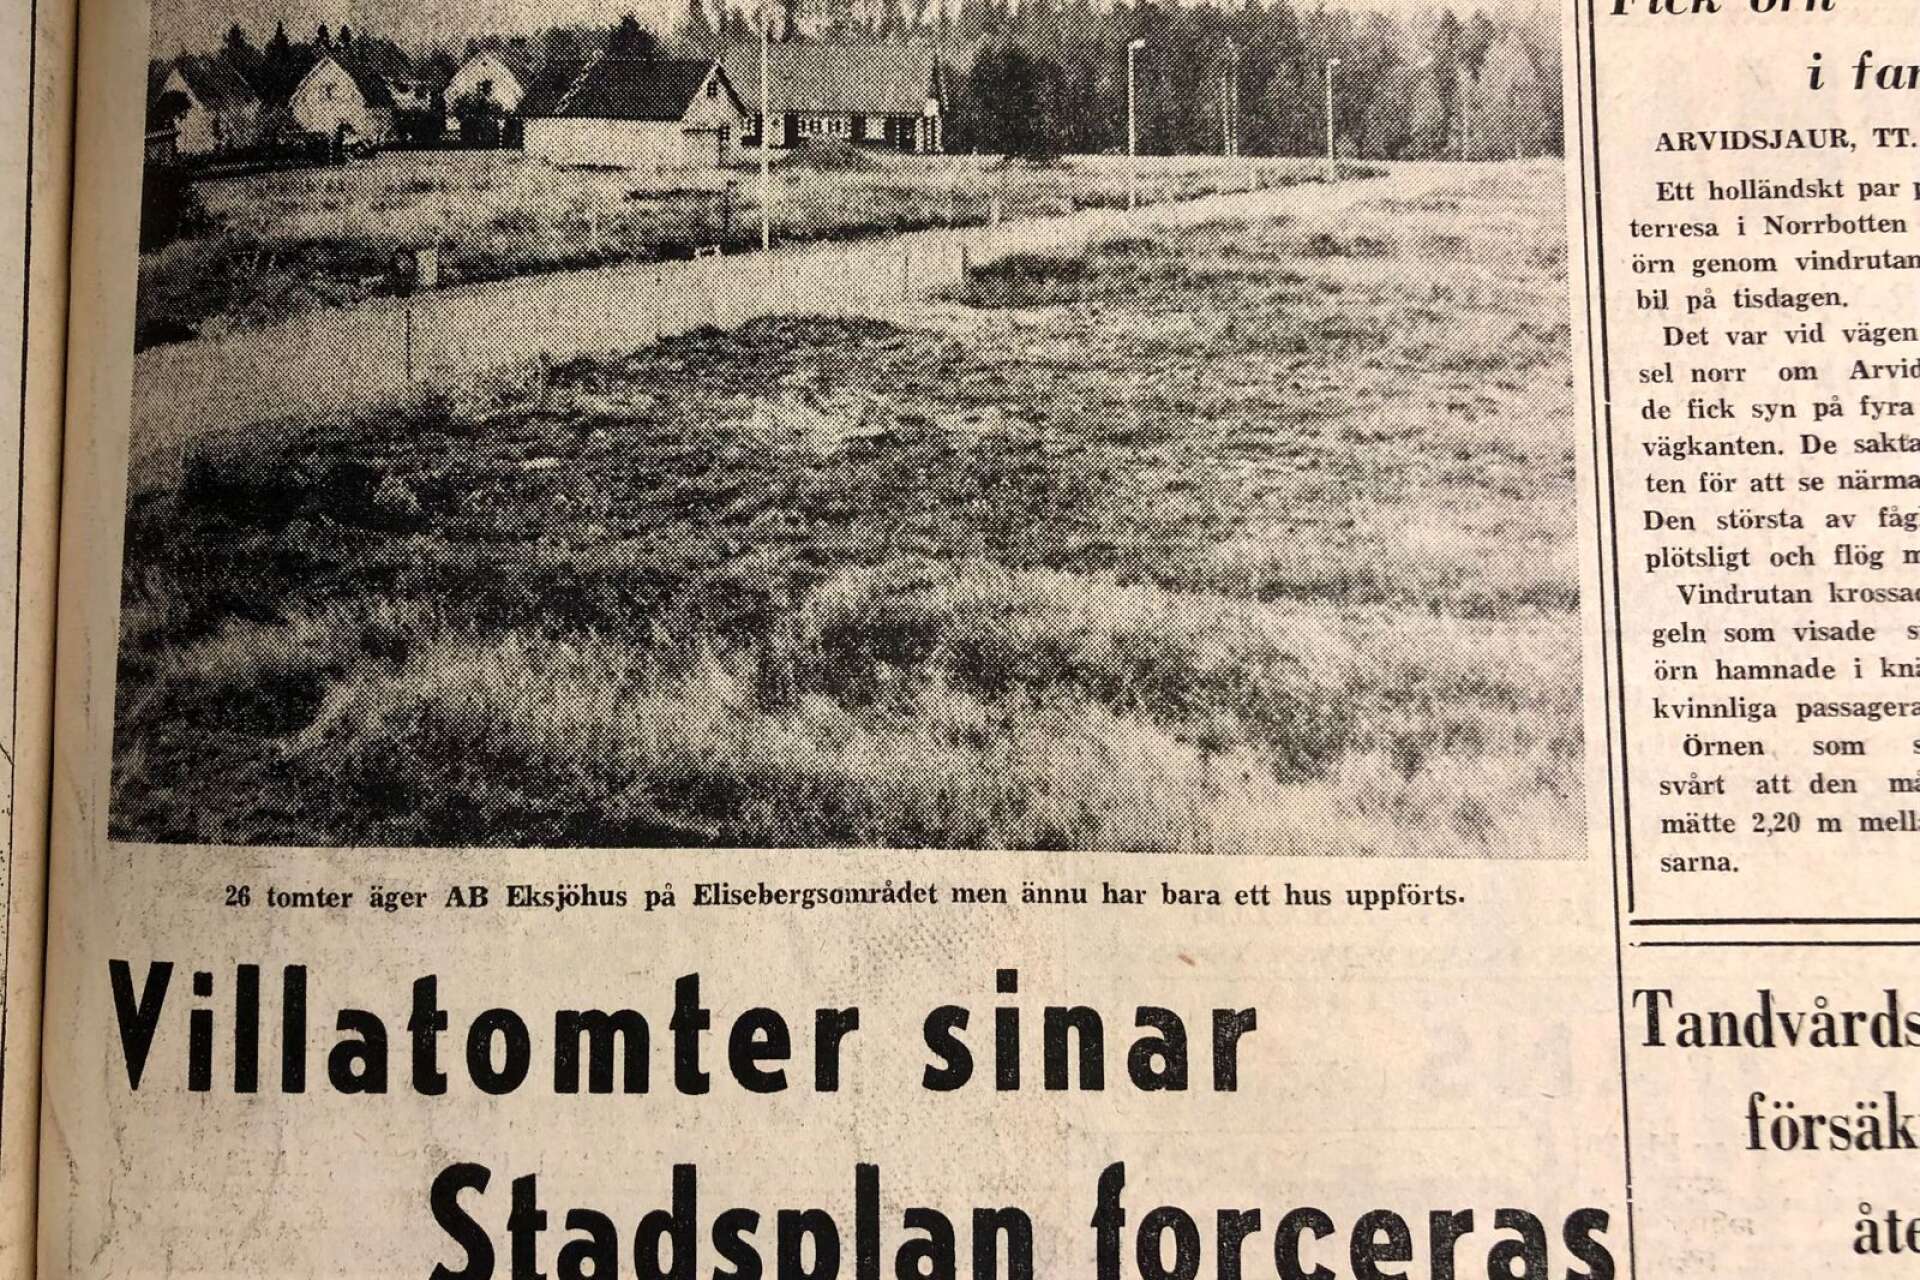 Åmåls kommun jagade tomter att bygga nya villor på för 50 år sedan. Här är Elisebergsområdet innan det blev fullt av villor.